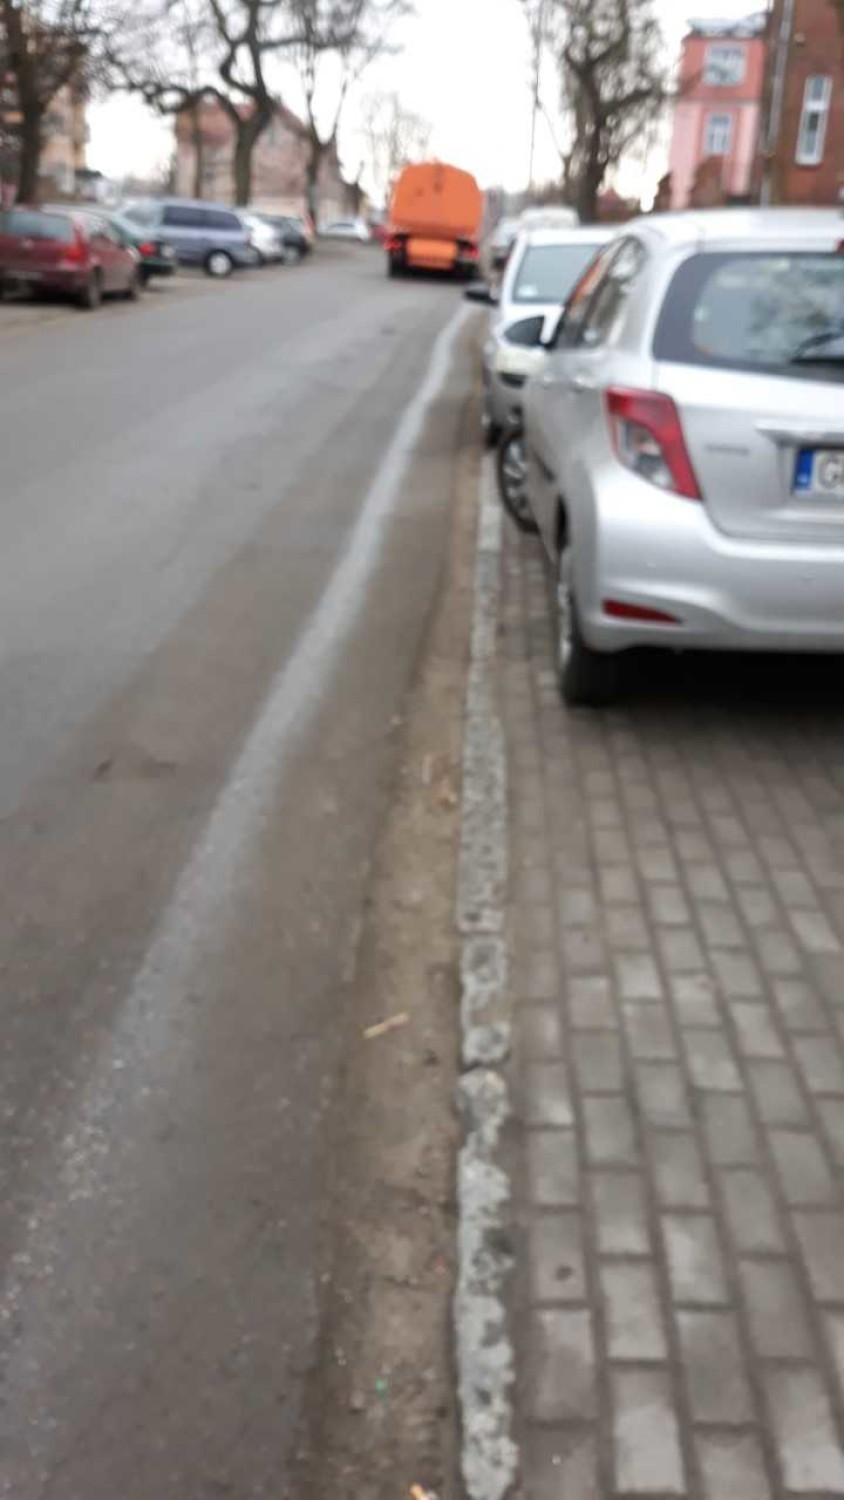 Podpatrzone. Tak wygląda sprzątanie miejskich dróg w Malborku? [ZDJĘCIA]